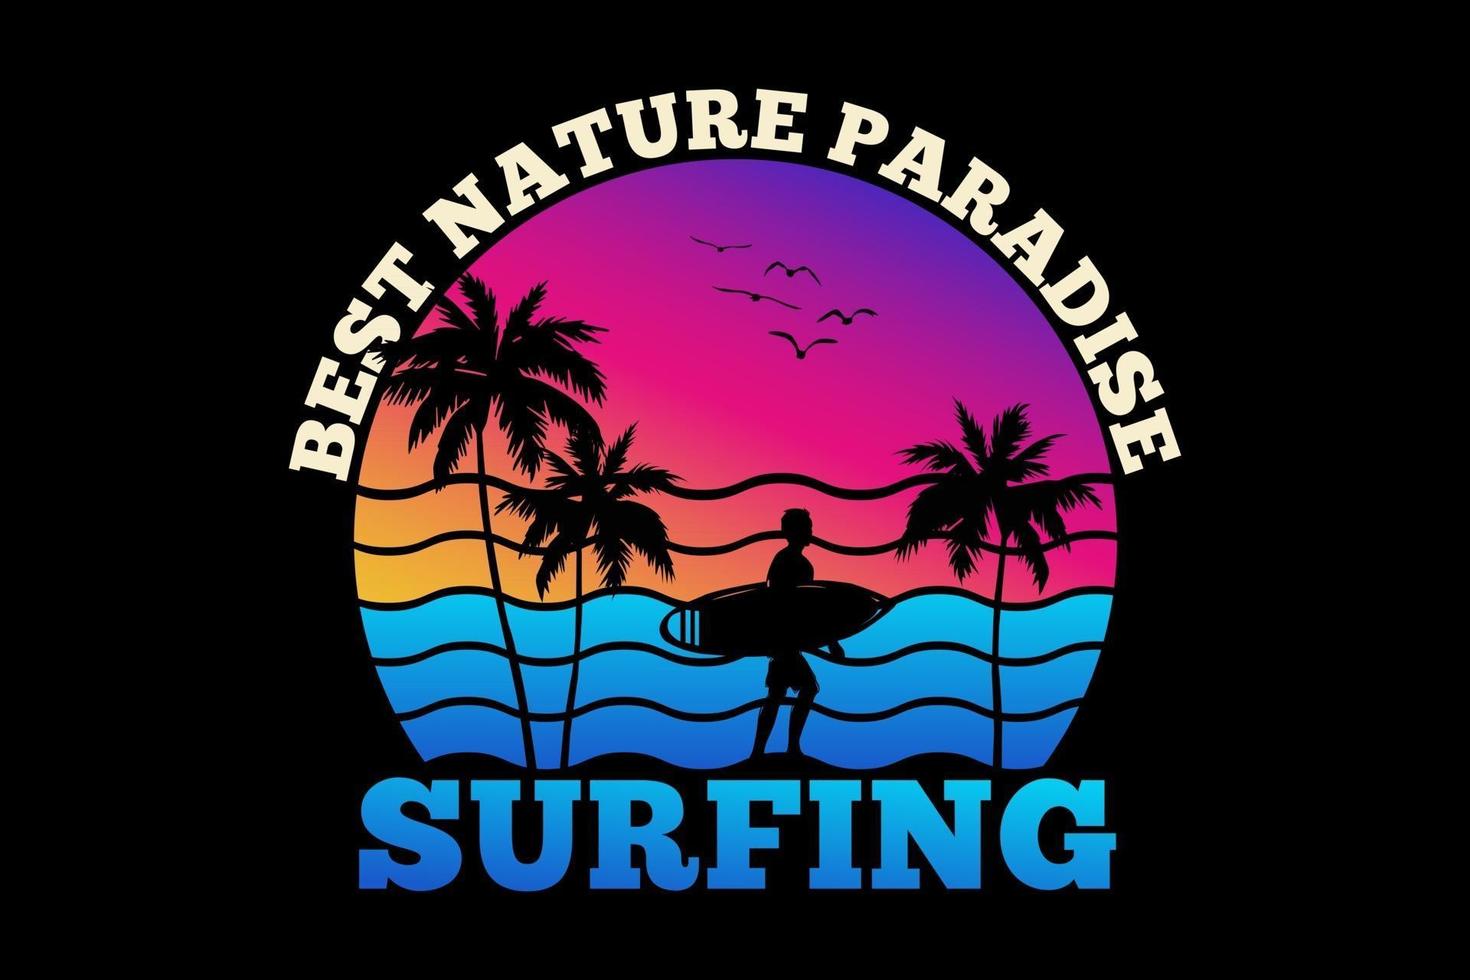 t-shirt bästa naturparadis surfing sommar solnedgång retrostil vektor